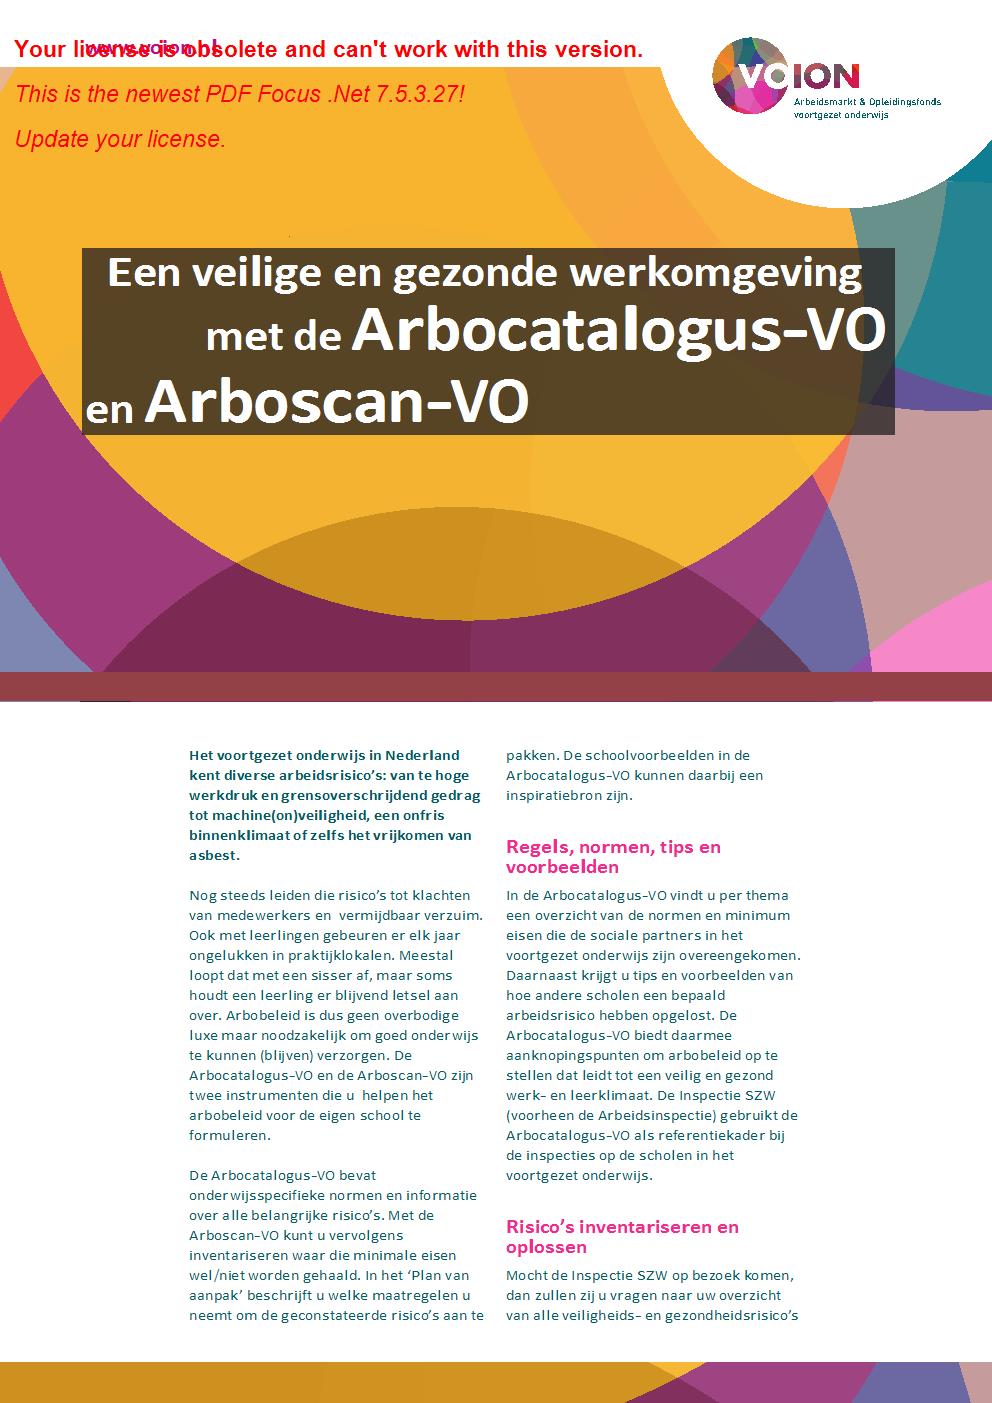 Flyer: Een veilige en gezonde werkomgeving met de Arbocatalogus-VO